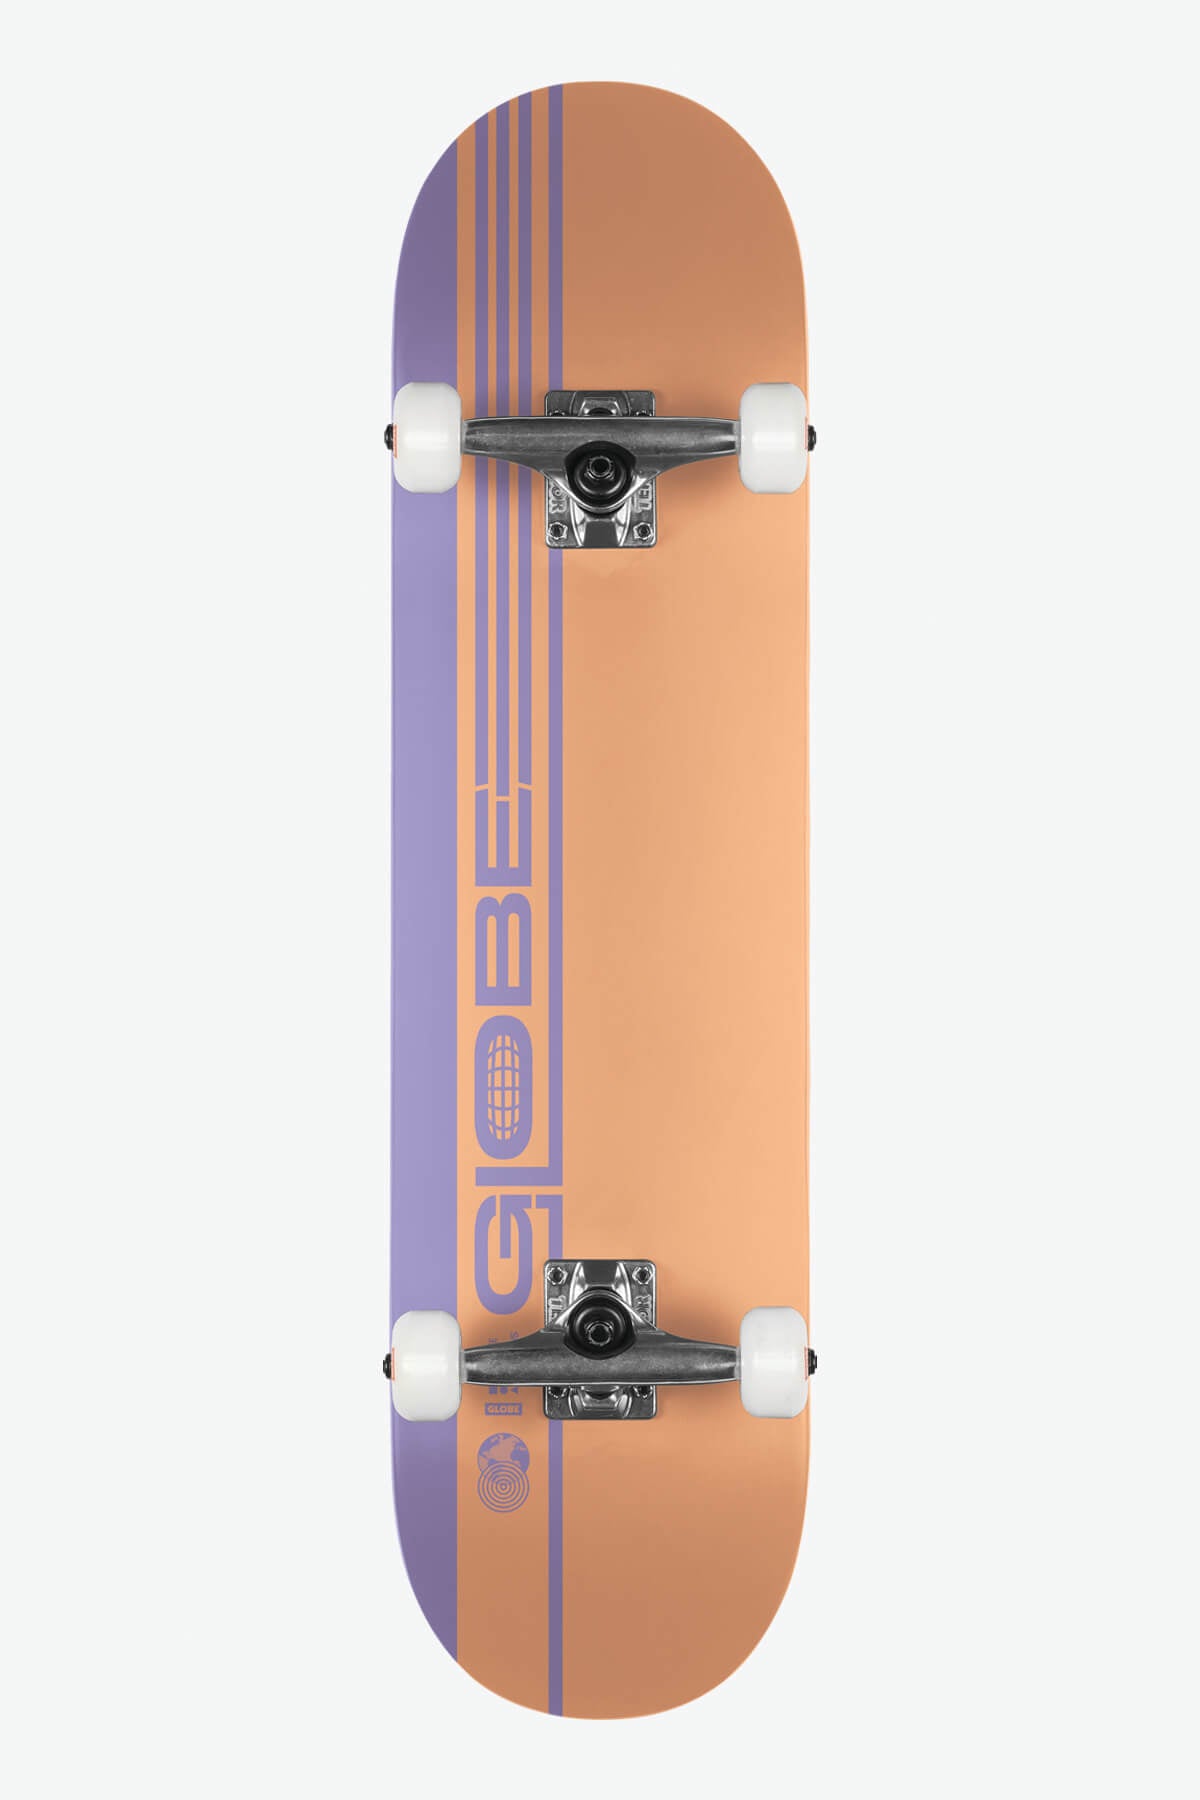 Globe - G0 Strype Hard - Arancione polveroso/Lavanda - 7,75" completo Skateboard